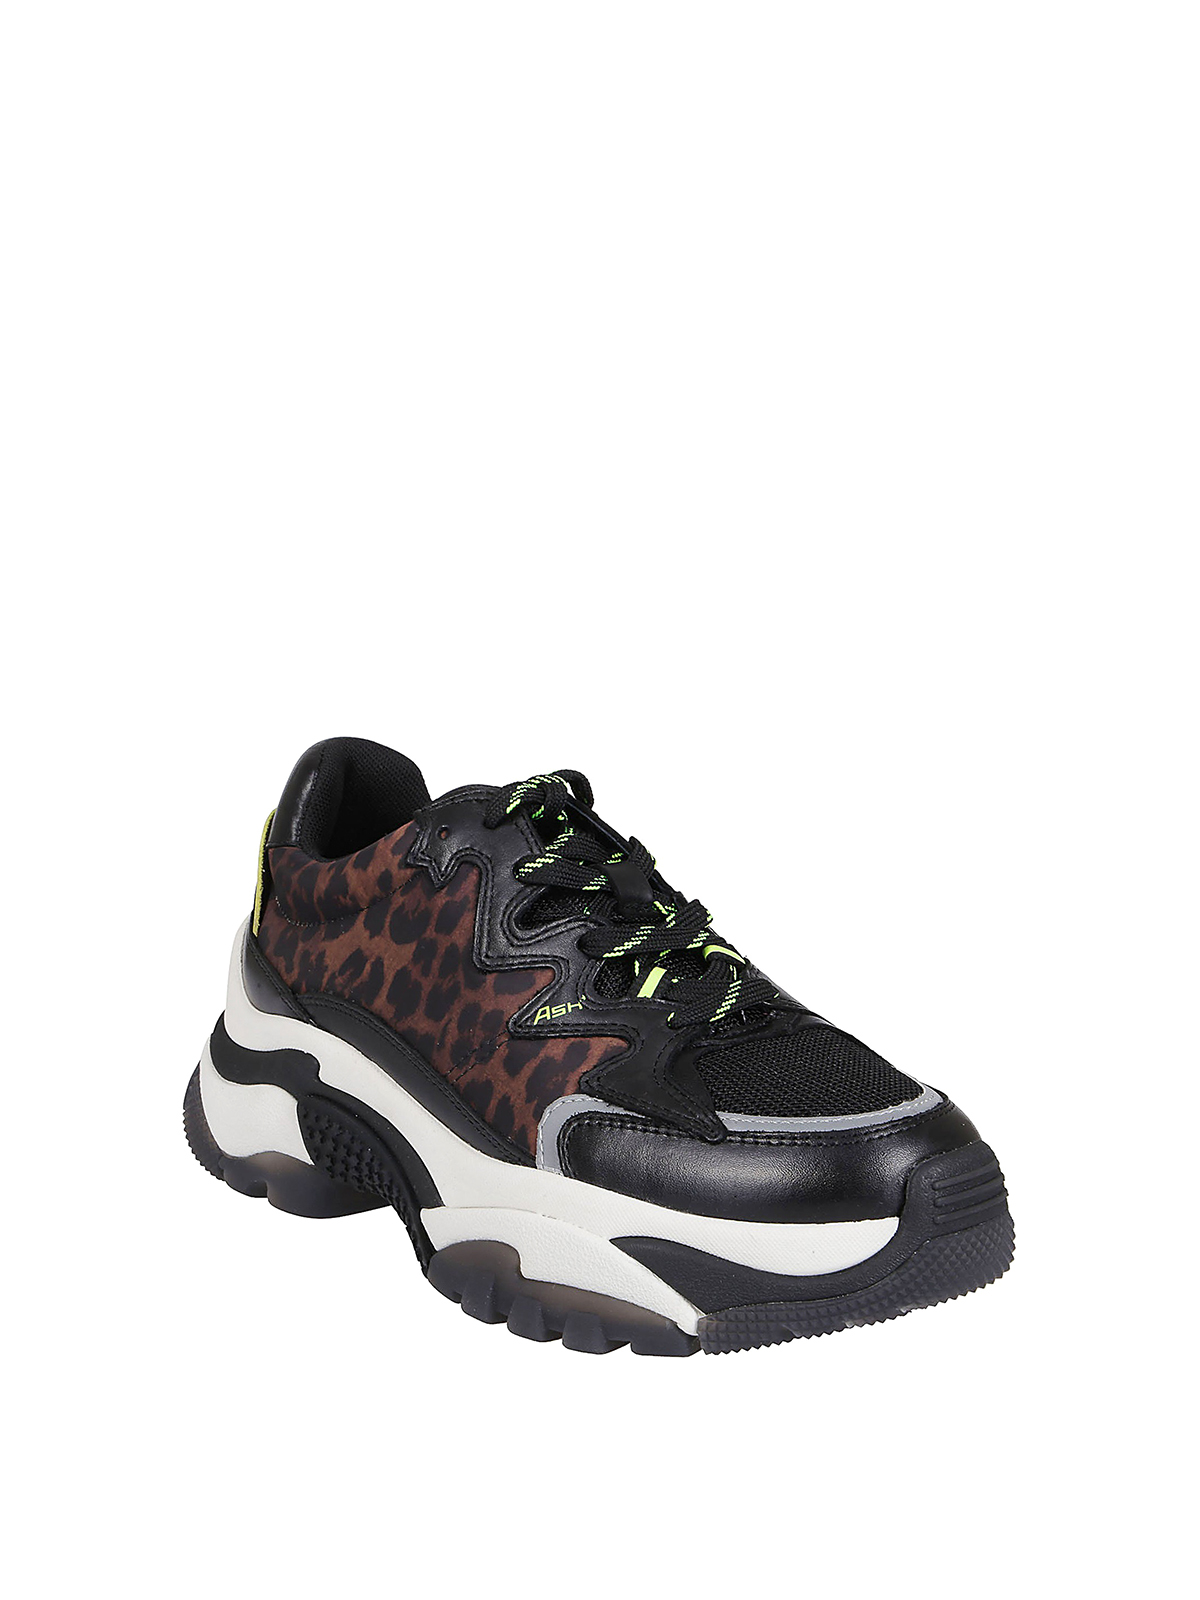 ash sneakers leopard